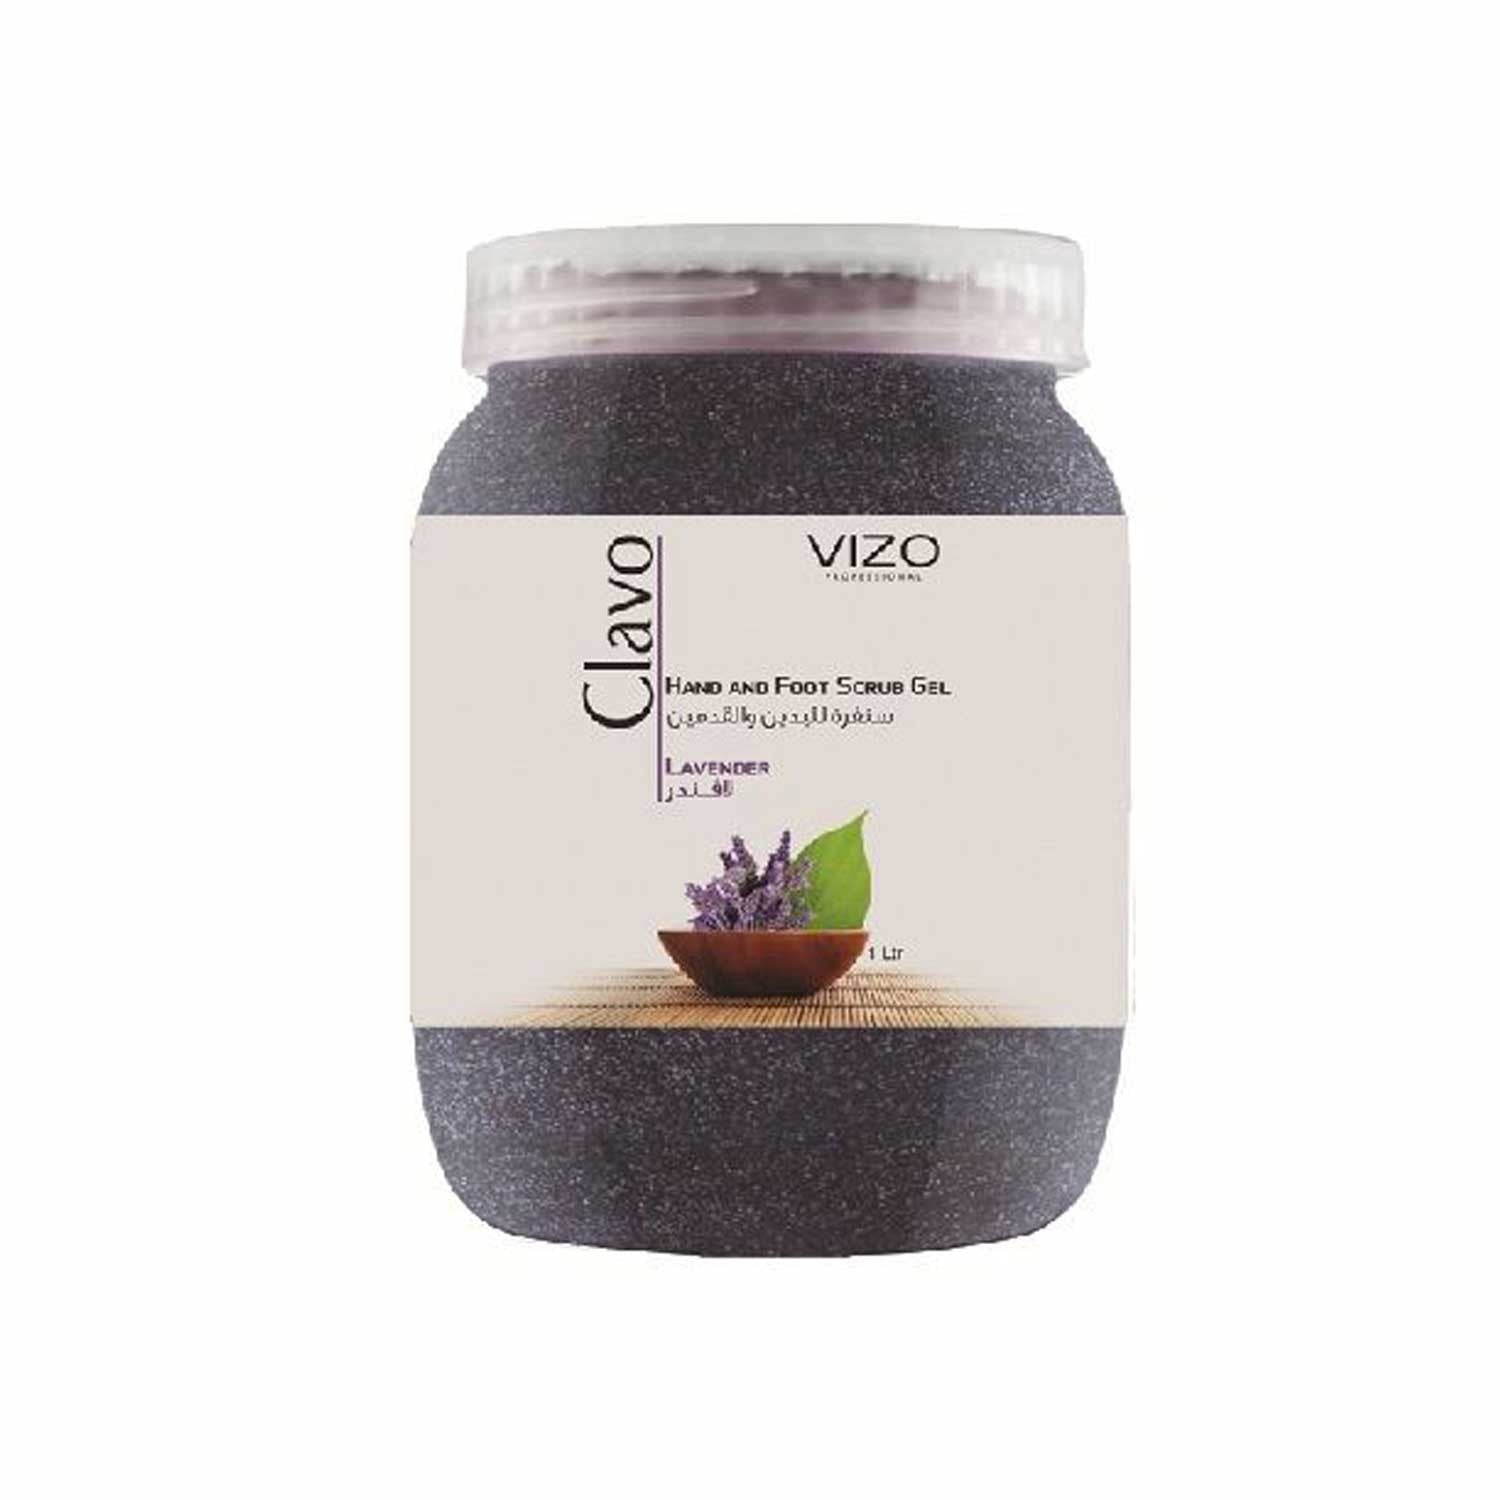 Vizo Hand&Foot Scrub Lavender 1 Liter - IZZAT DAOUK SA